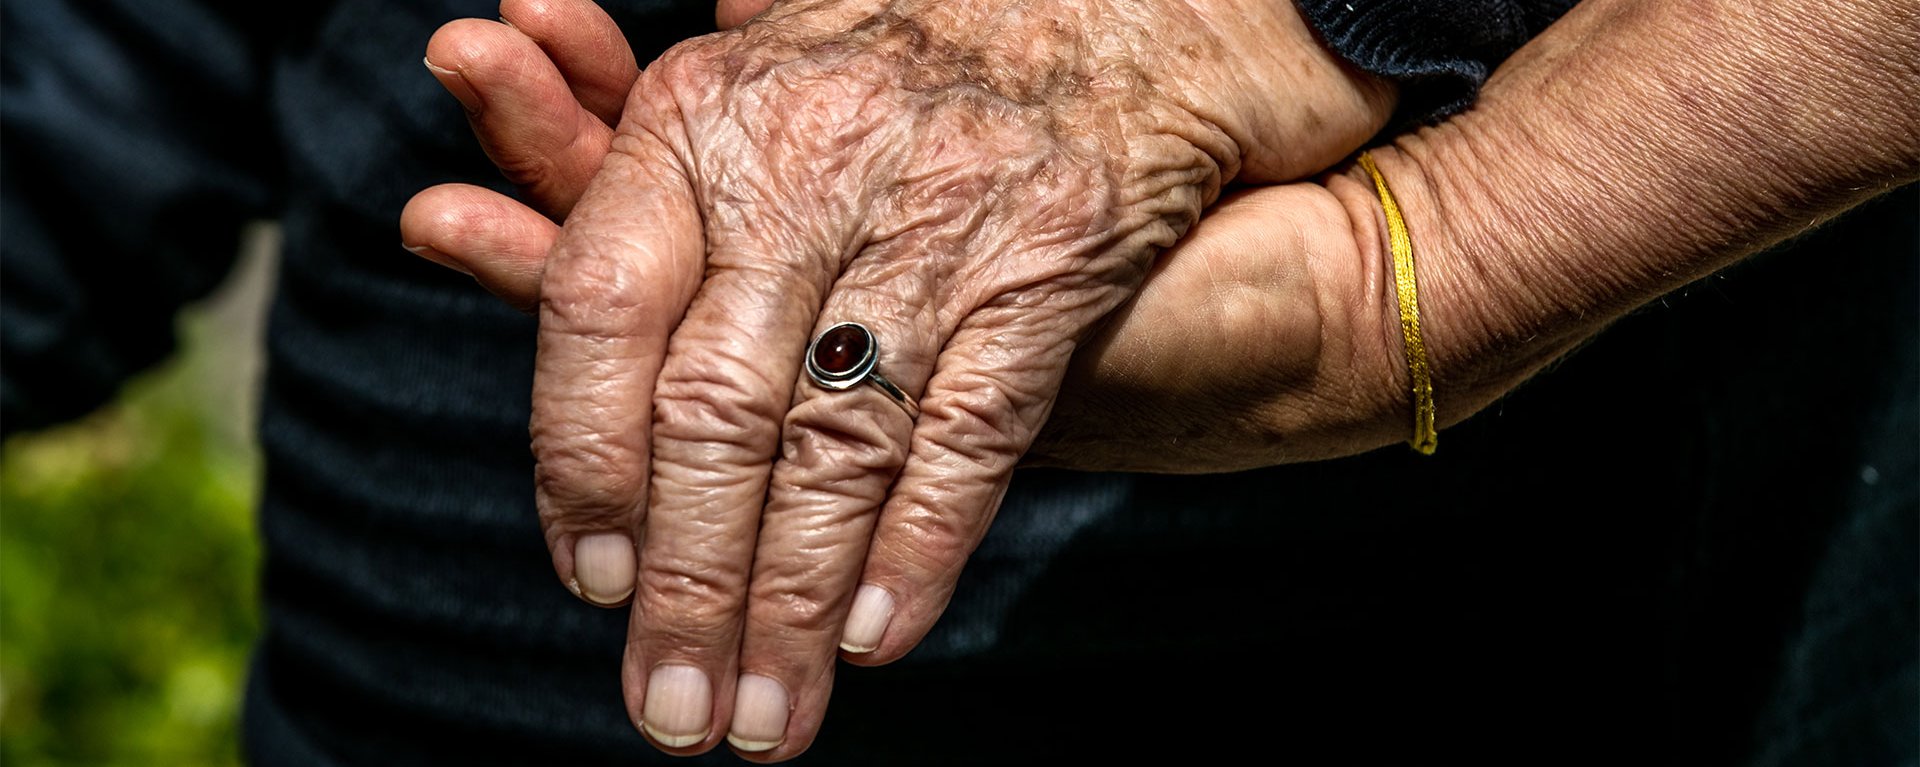 Mitarbeiterin des Hospizvereins hält die Hand einer Patientin